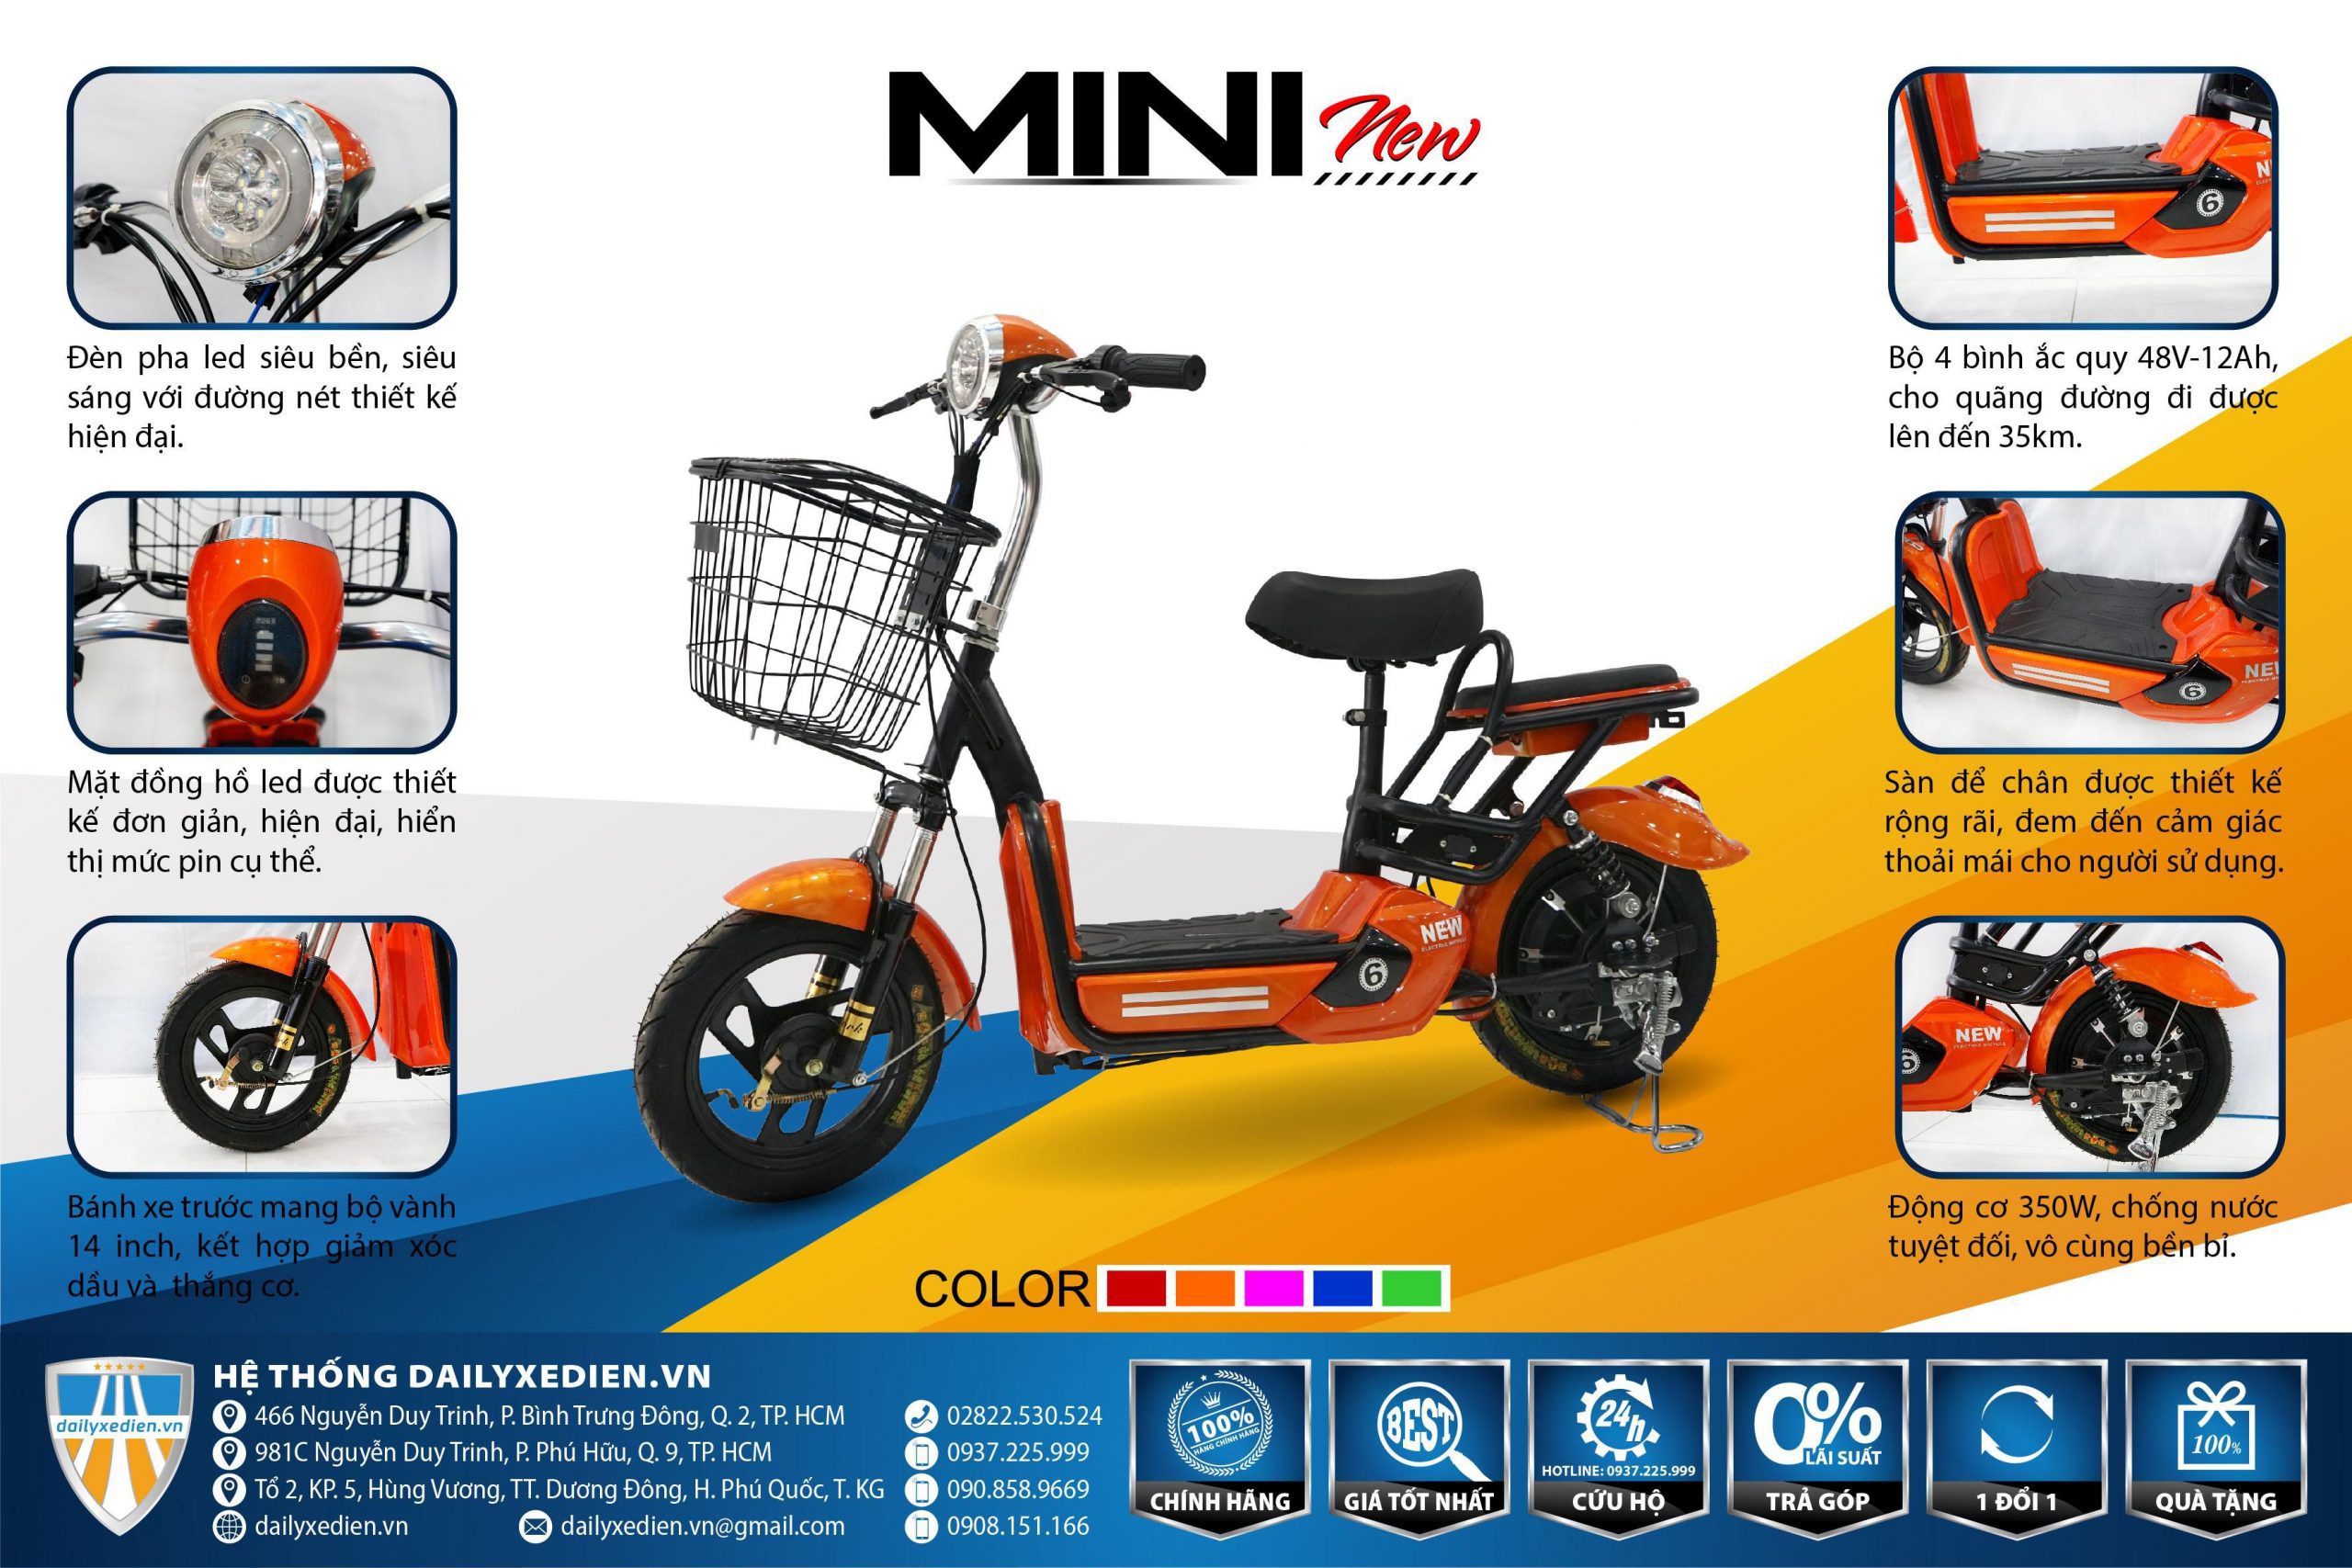 xe dap dien 6 mini new 24 scaled - Xe đạp điện Mini New